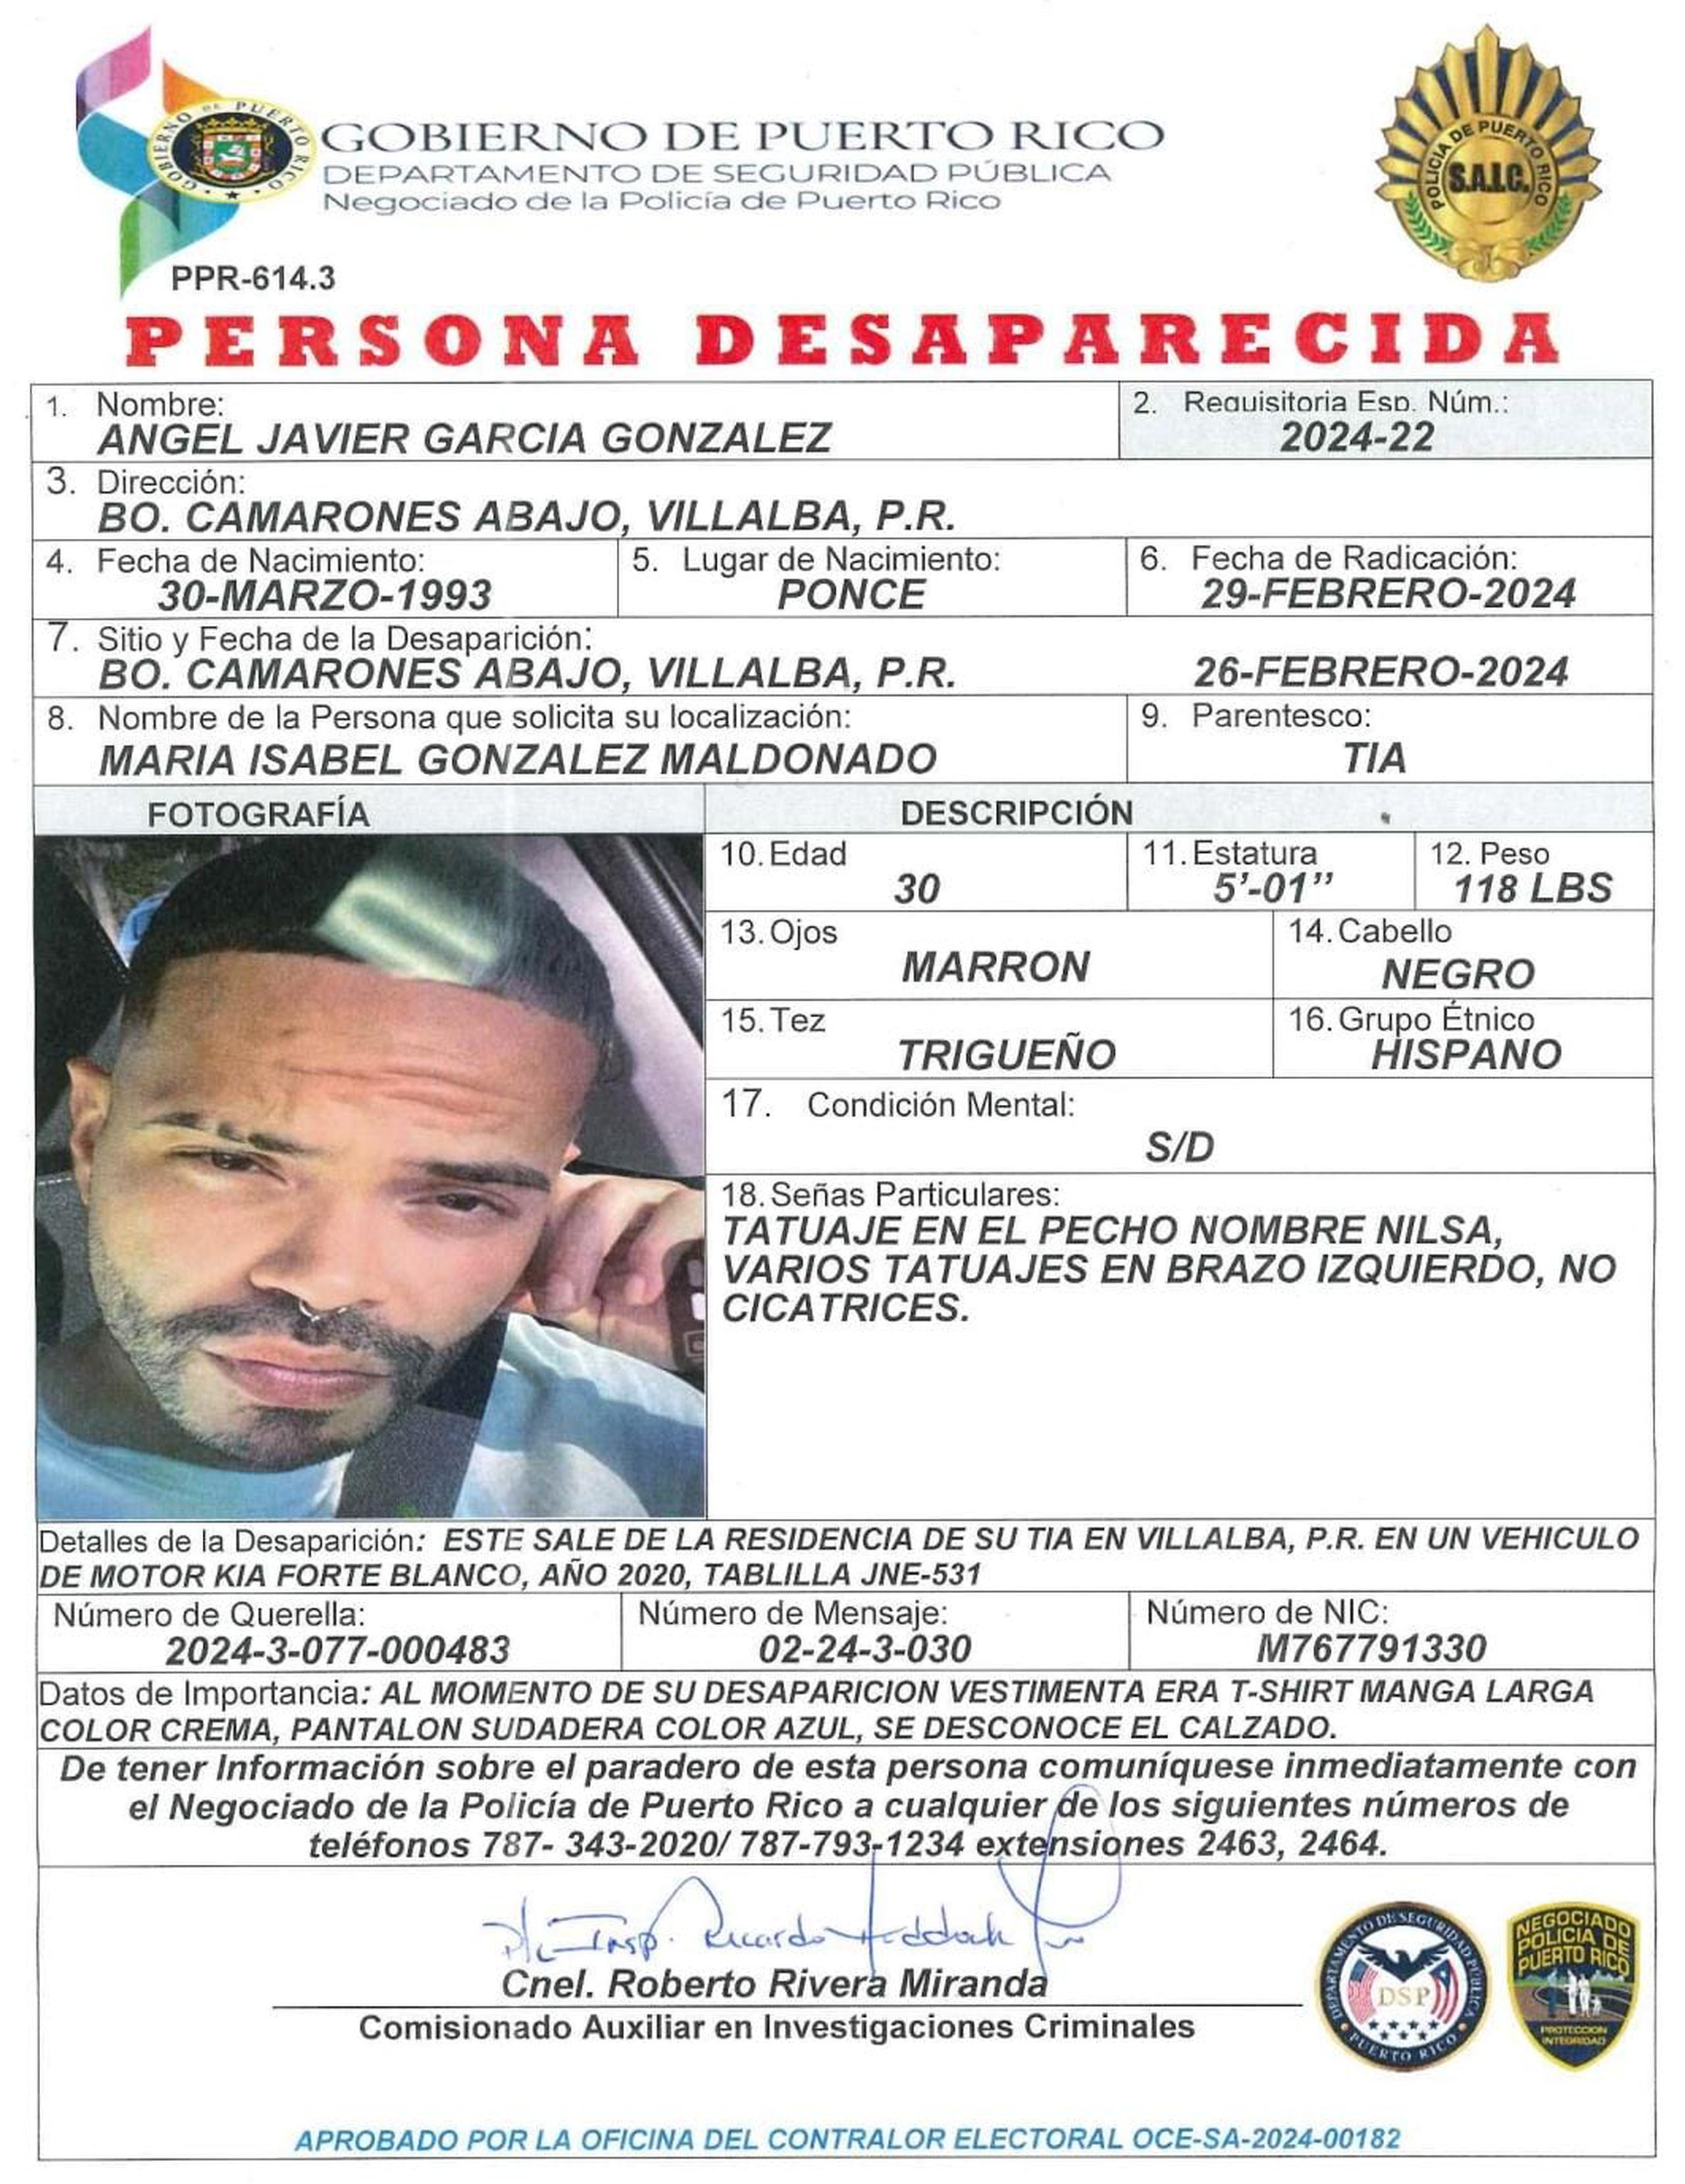 Ángel Javier García González de 30 años, fue visto por última vez el 26 de febrero a eso de las 6:00 p.m. cuando salió de  su residencia en el barrio Camarones Abajo, en Villalba.